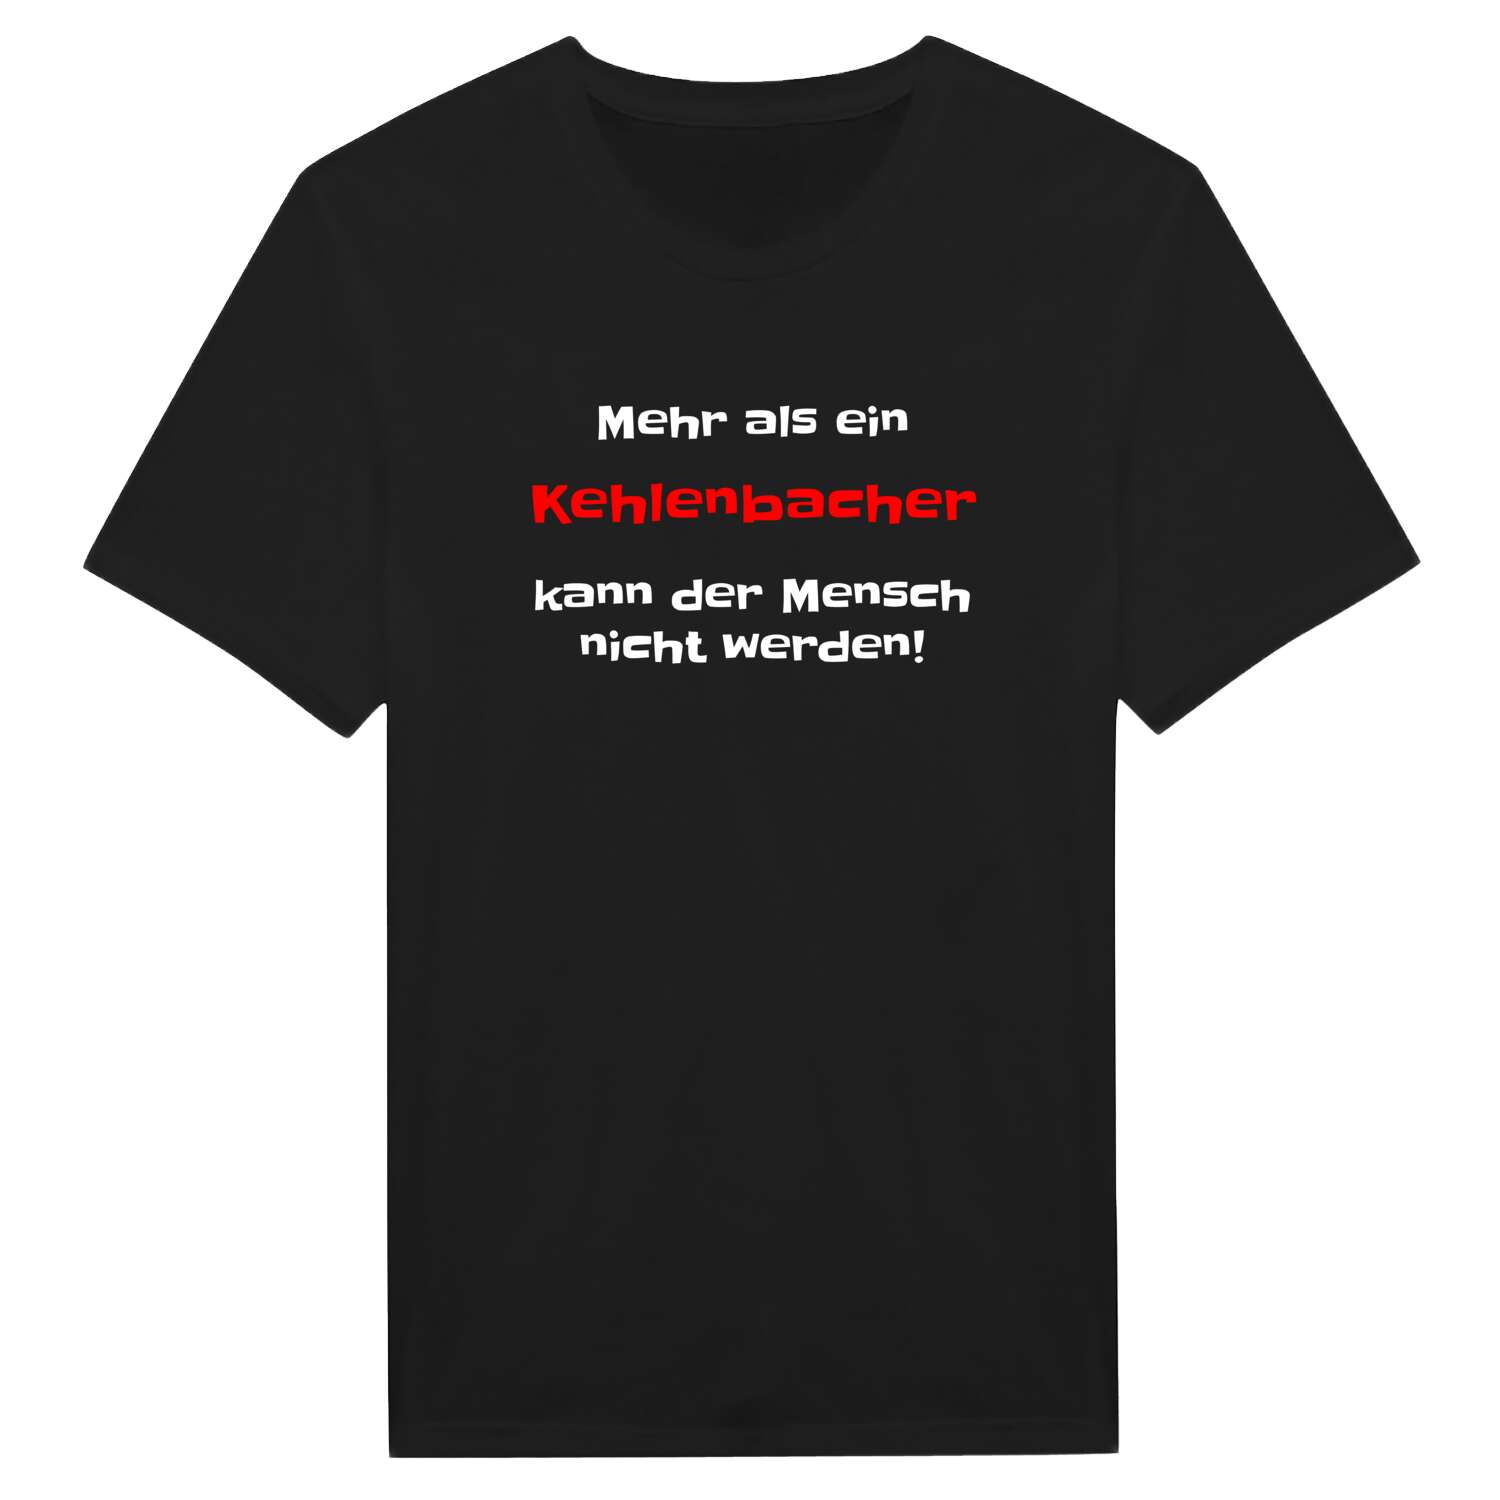 Kehlenbach T-Shirt »Mehr als ein«